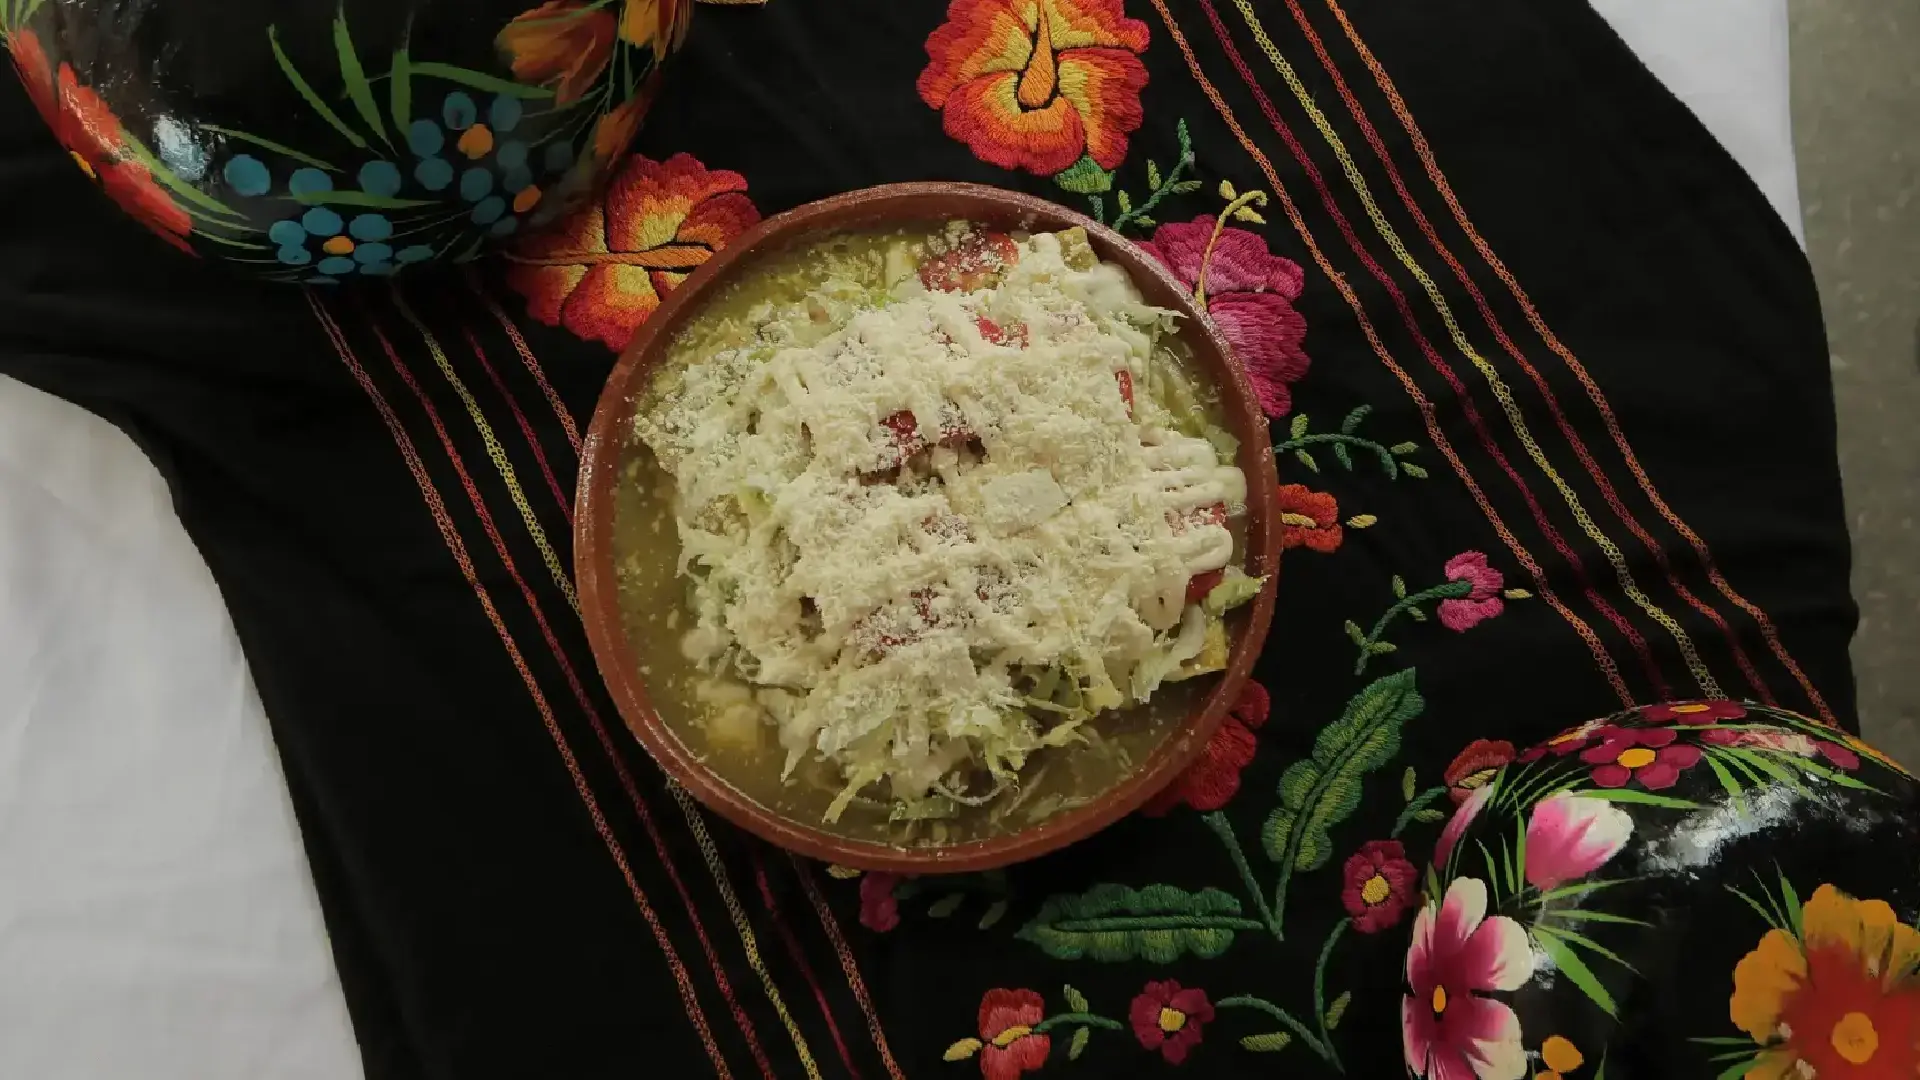 Platillos tradicionales del día de muertos en México